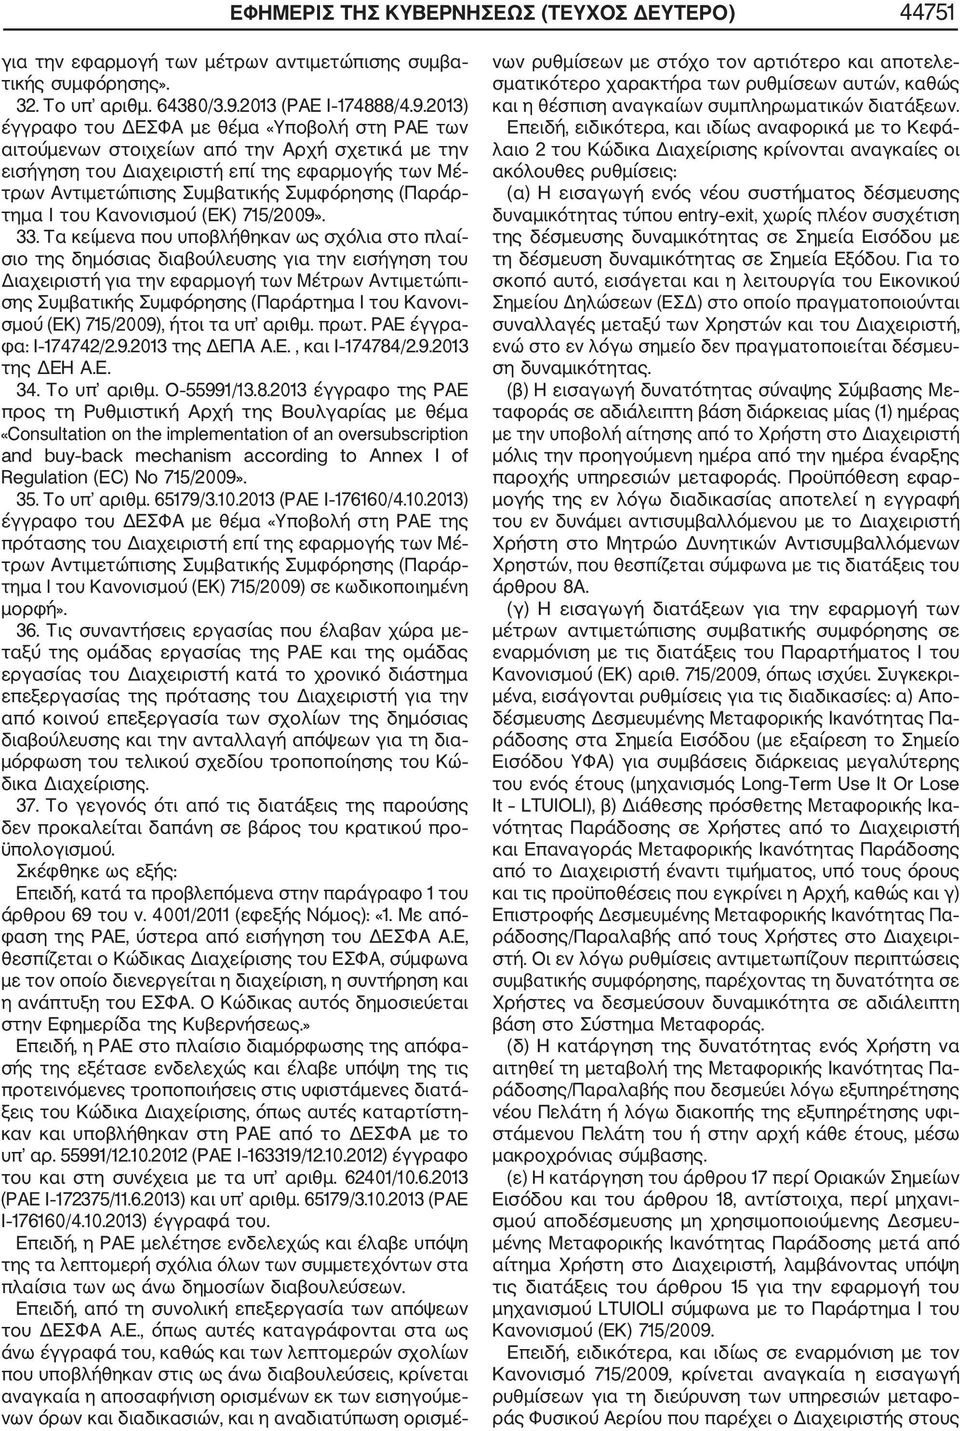 2013) έγγραφο του ΔΕΣΦΑ με θέμα «Υποβολή στη ΡΑΕ των αιτούμενων στοιχείων από την Αρχή σχετικά με την εισήγηση του Διαχειριστή επί της εφαρμογής των Μέ τρων Αντιμετώπισης Συμβατικής Συμφόρησης (Παράρ